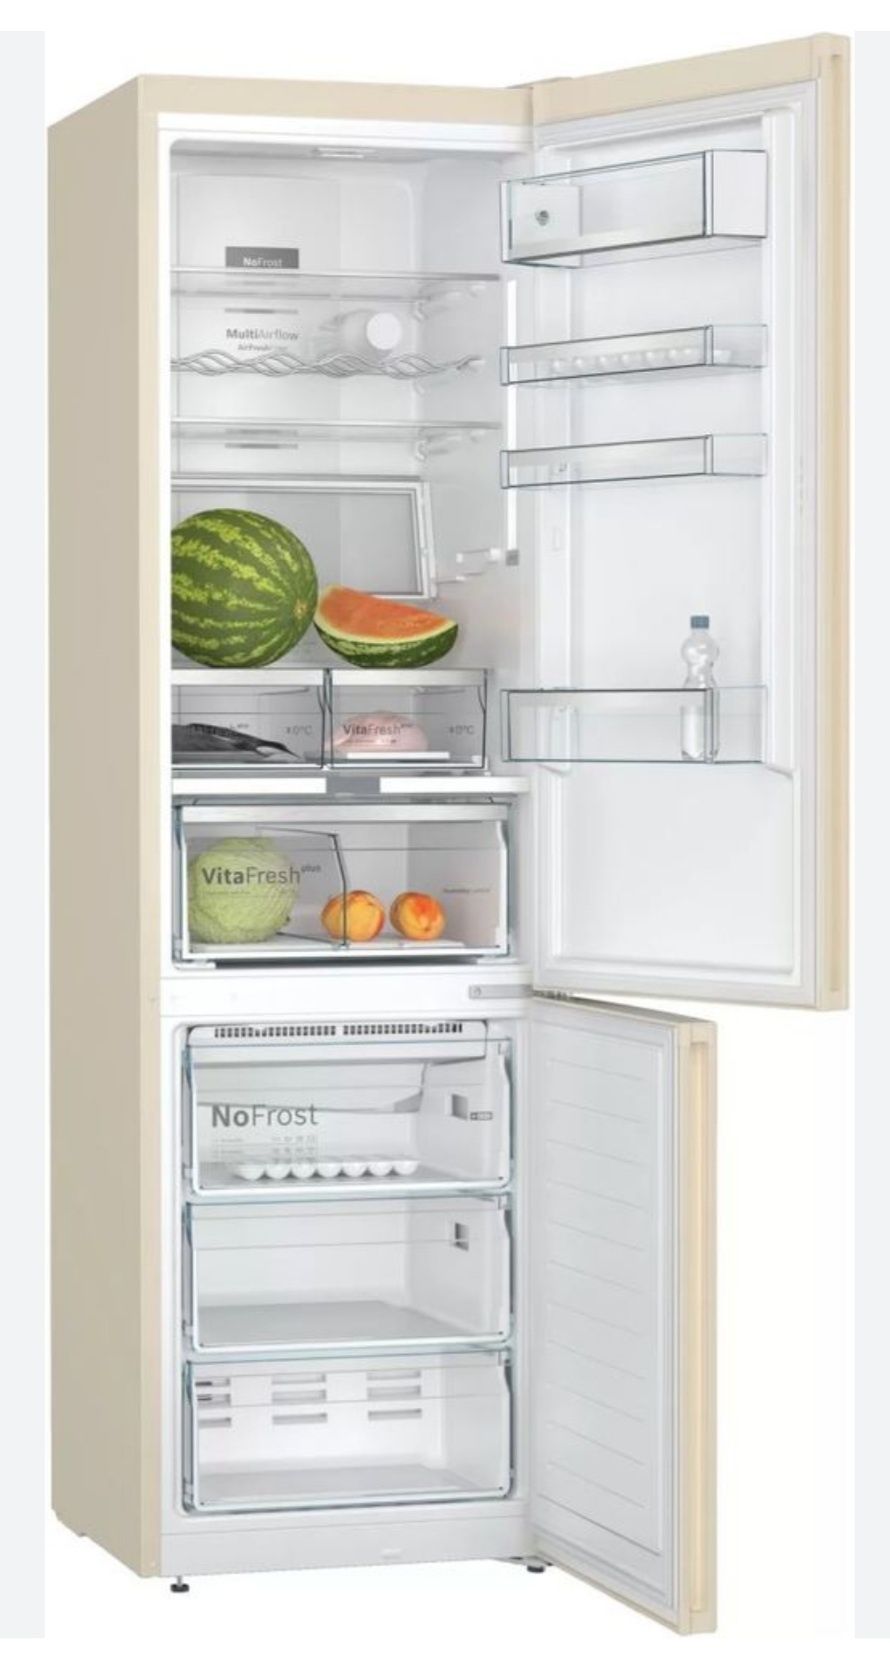 Ремонт и профлактика всех видов и моделей Холодильник